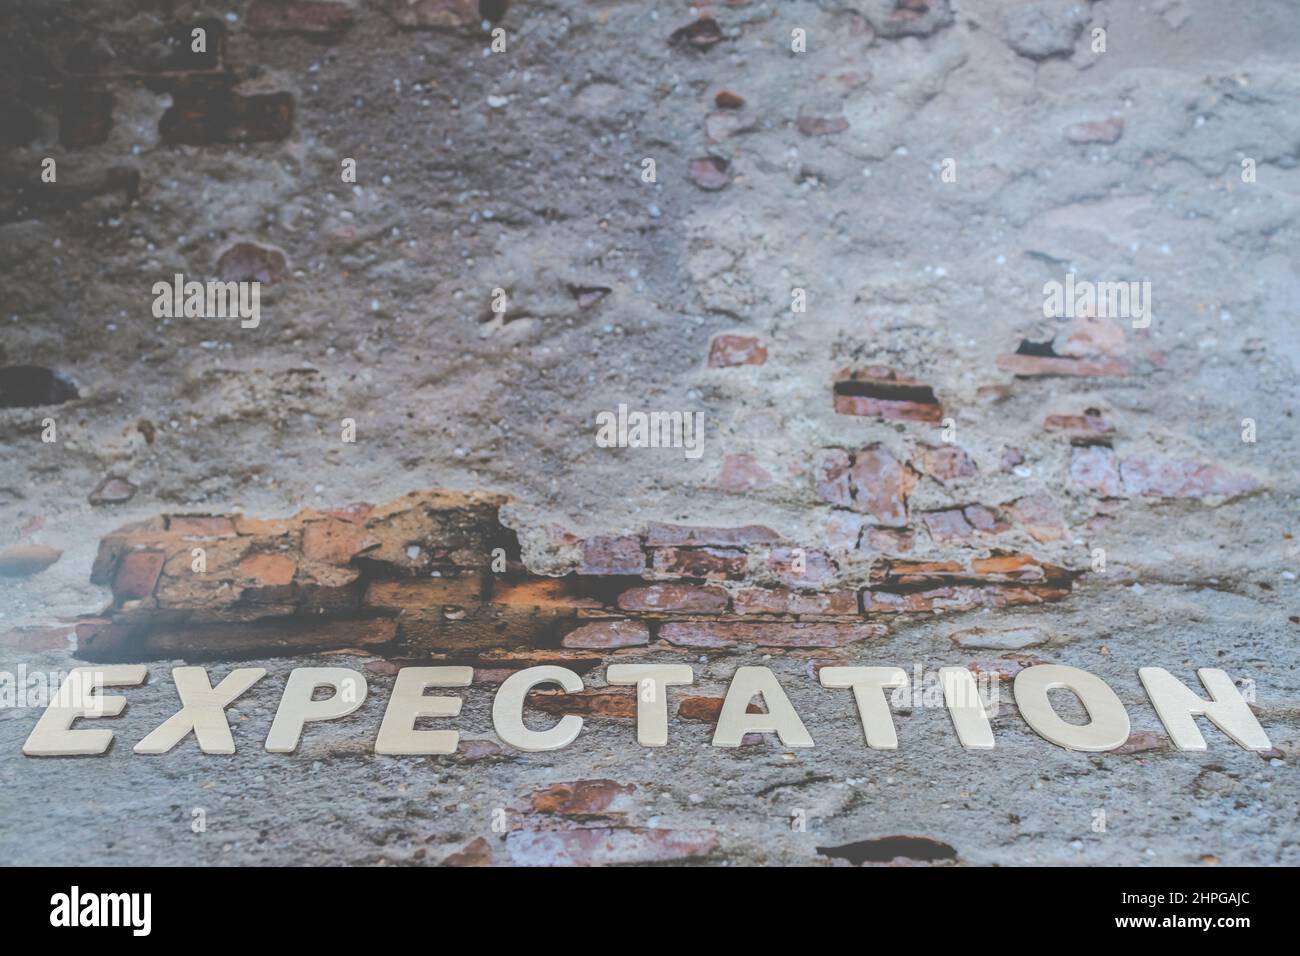 La parola delle aspettative sul muro. Immagine del concetto aziendale. Previsione delle aspettative concetto di pianificazione della strategia della speranza. Foto Stock